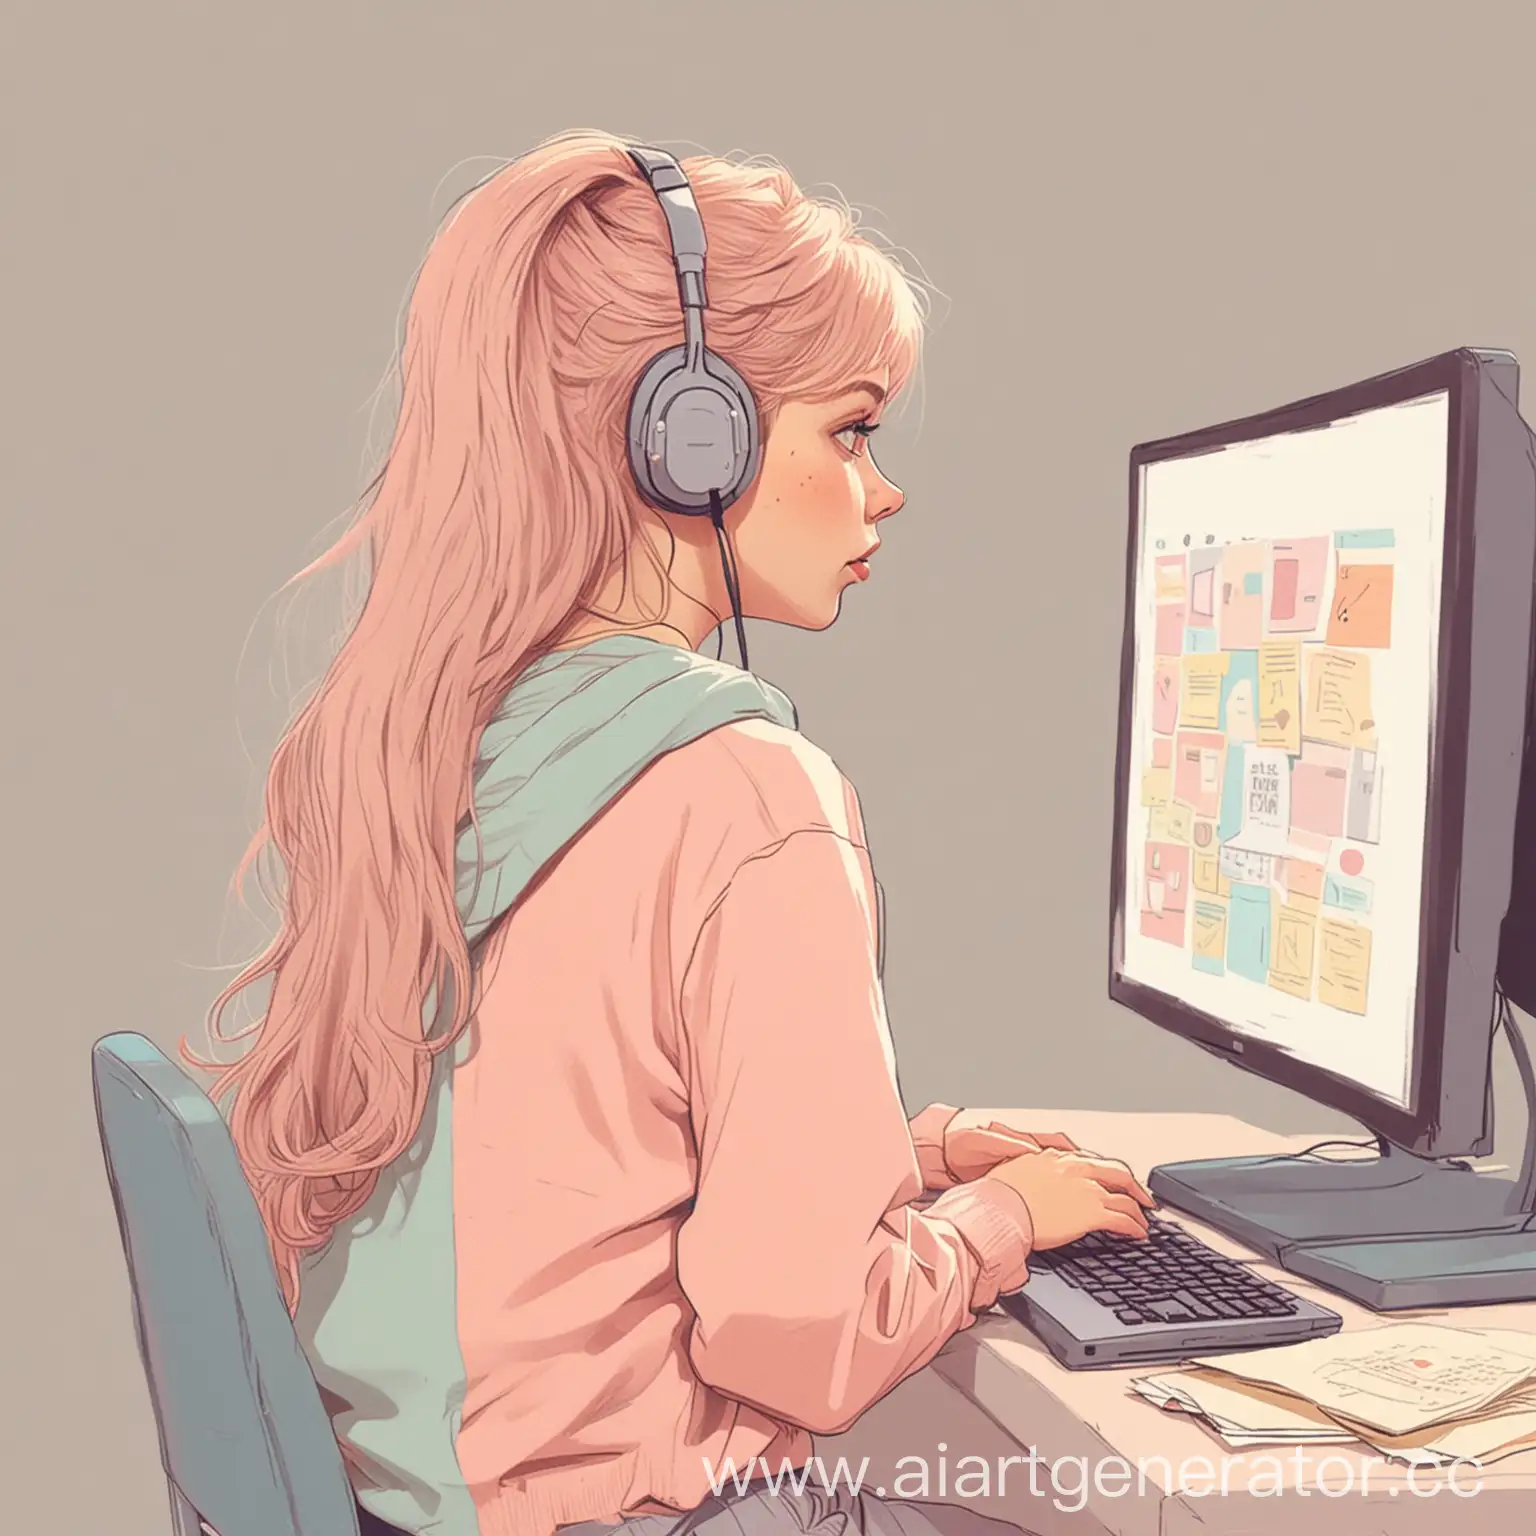 Девочка подросток сидящая к нам спиной смотрит в компьютер и ищет информацию  в мультяшном стиле и пастельных тонах